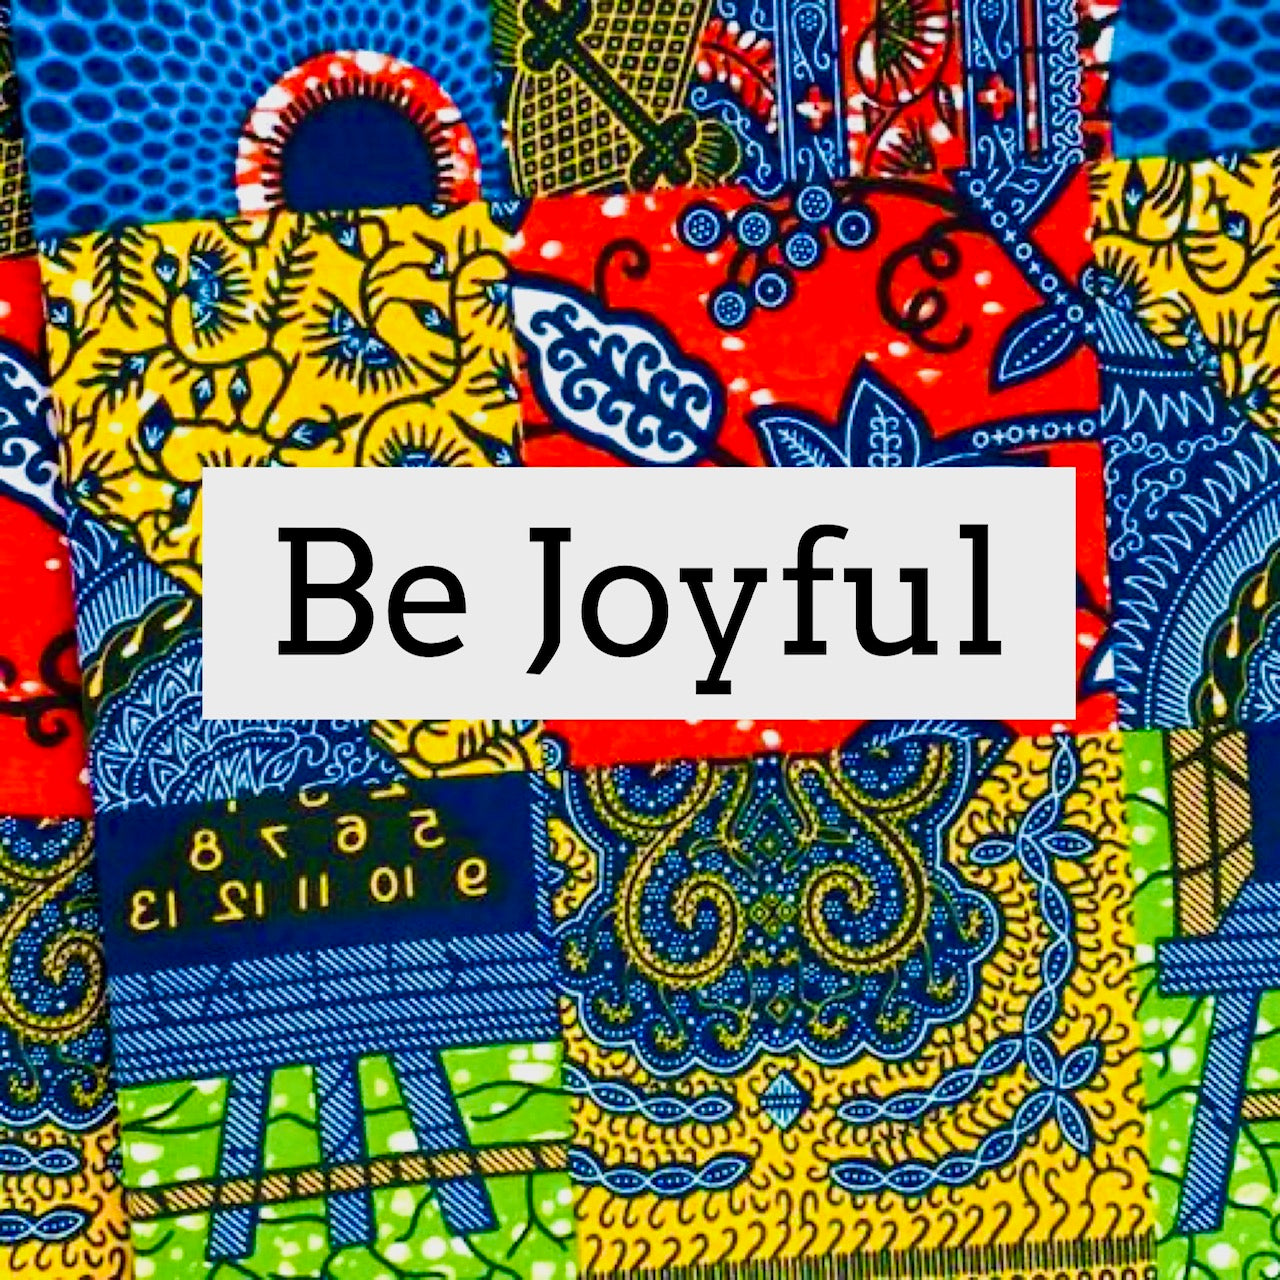 Be Joyful (2 For $20)